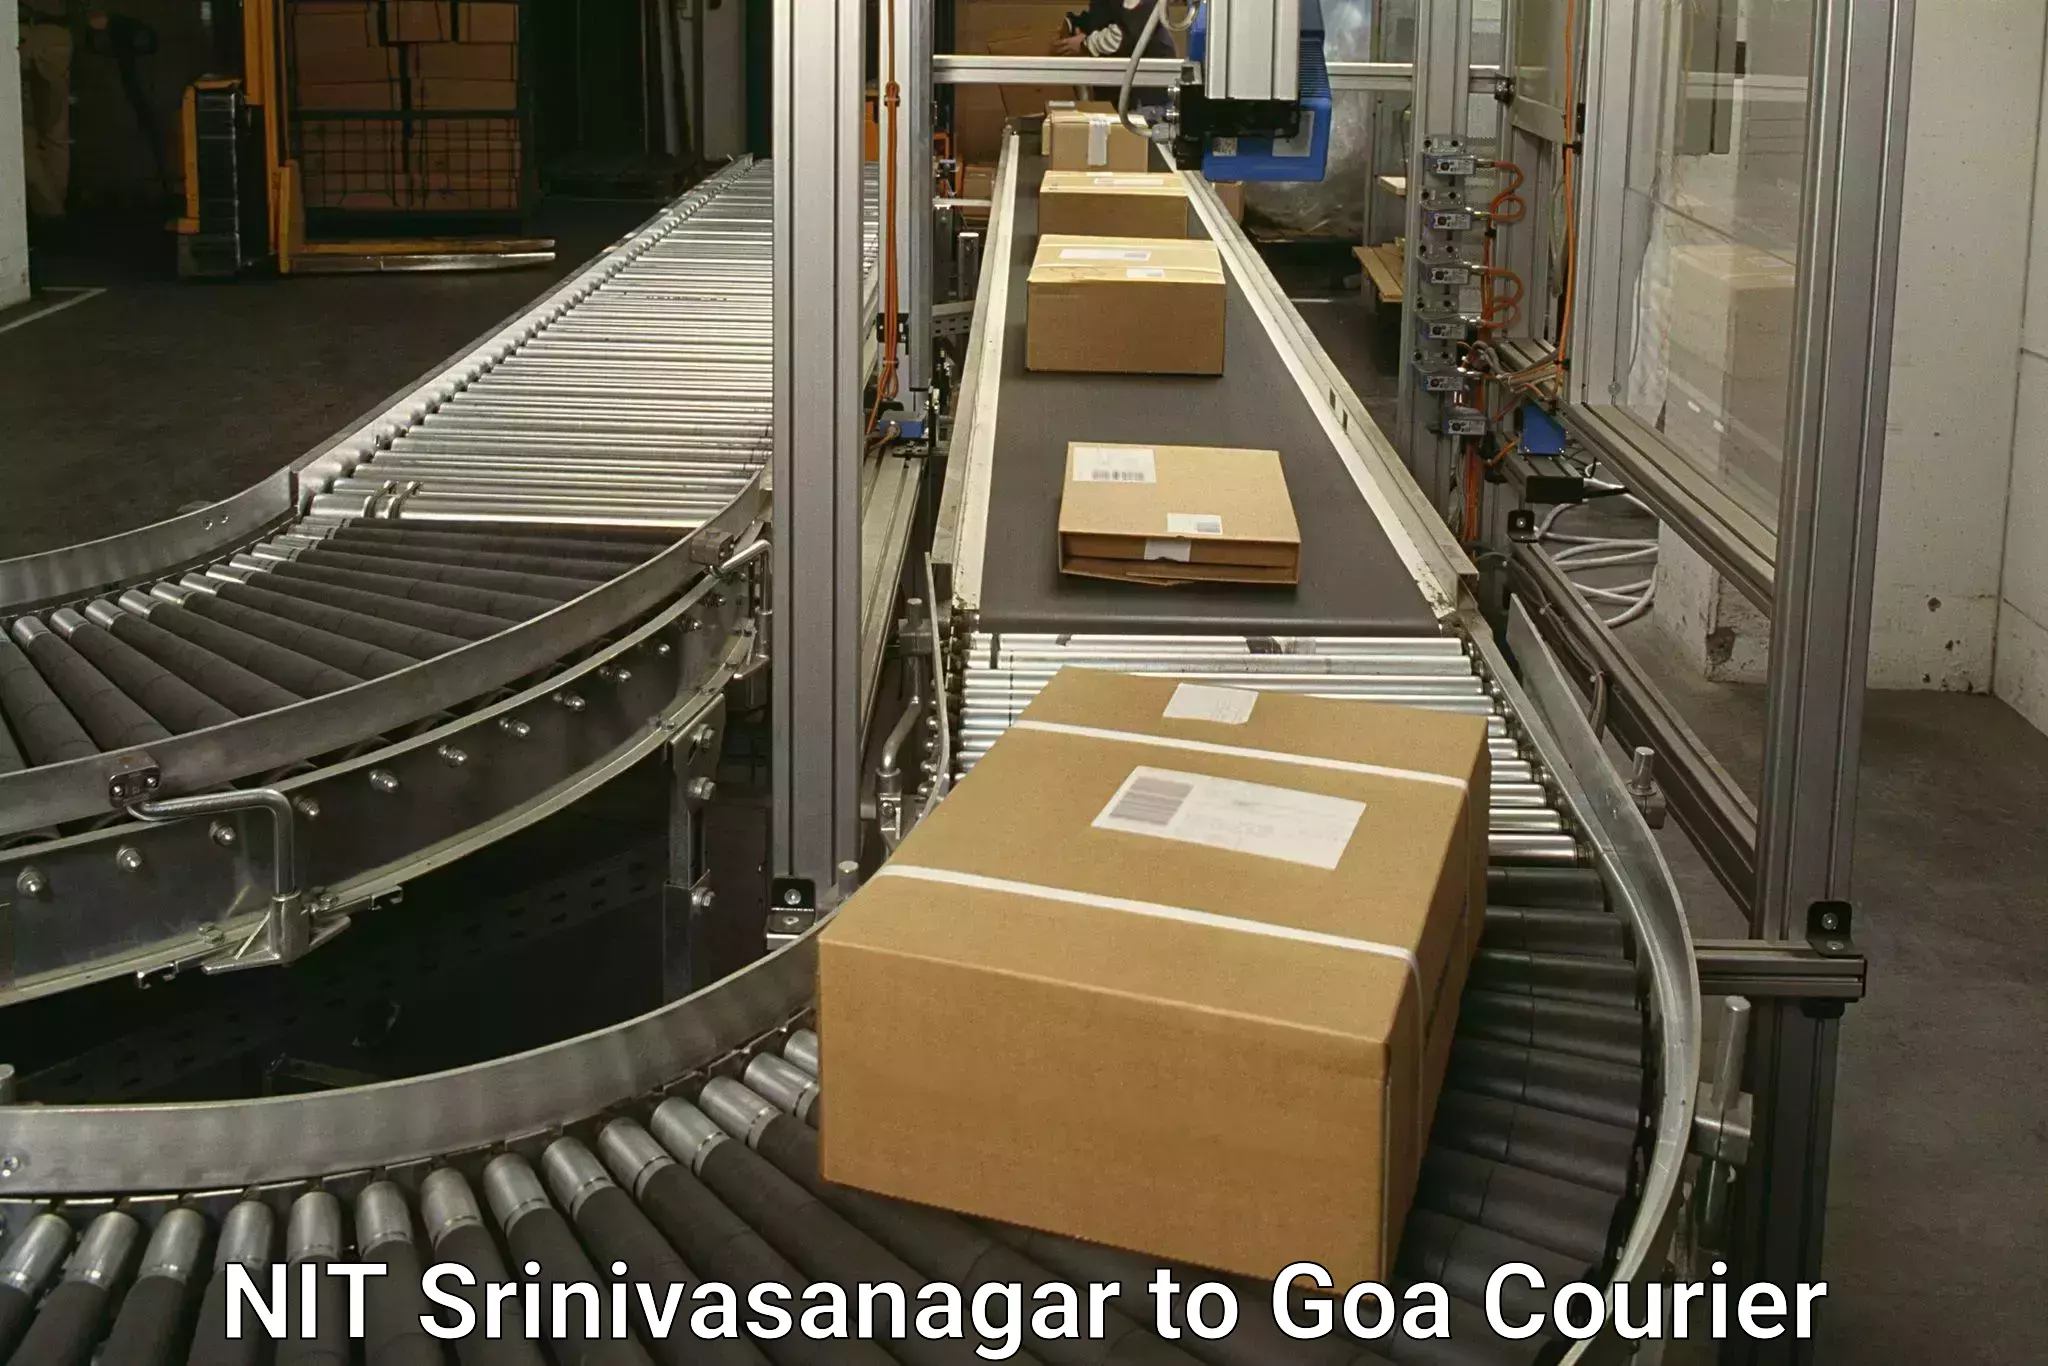 Easy access courier services NIT Srinivasanagar to South Goa